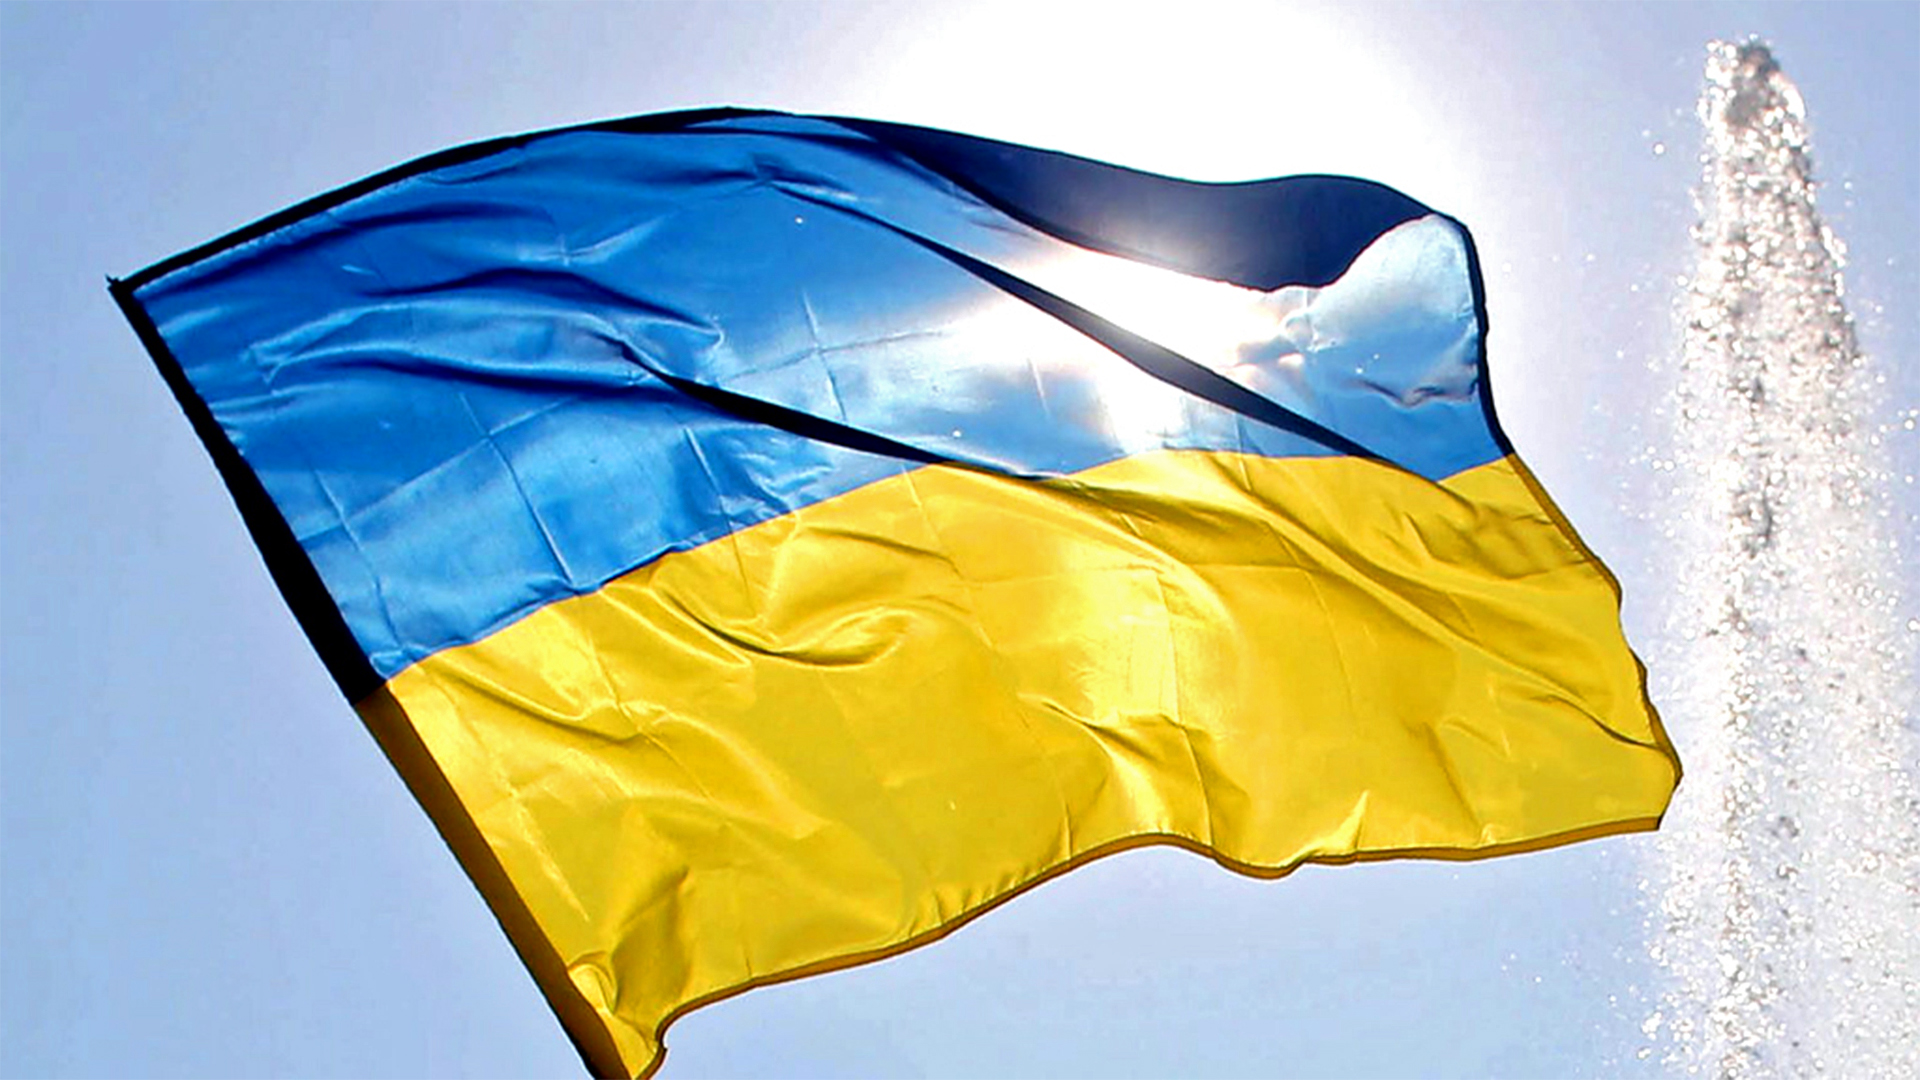 Ukrainische Fahne | picture alliance / dpa